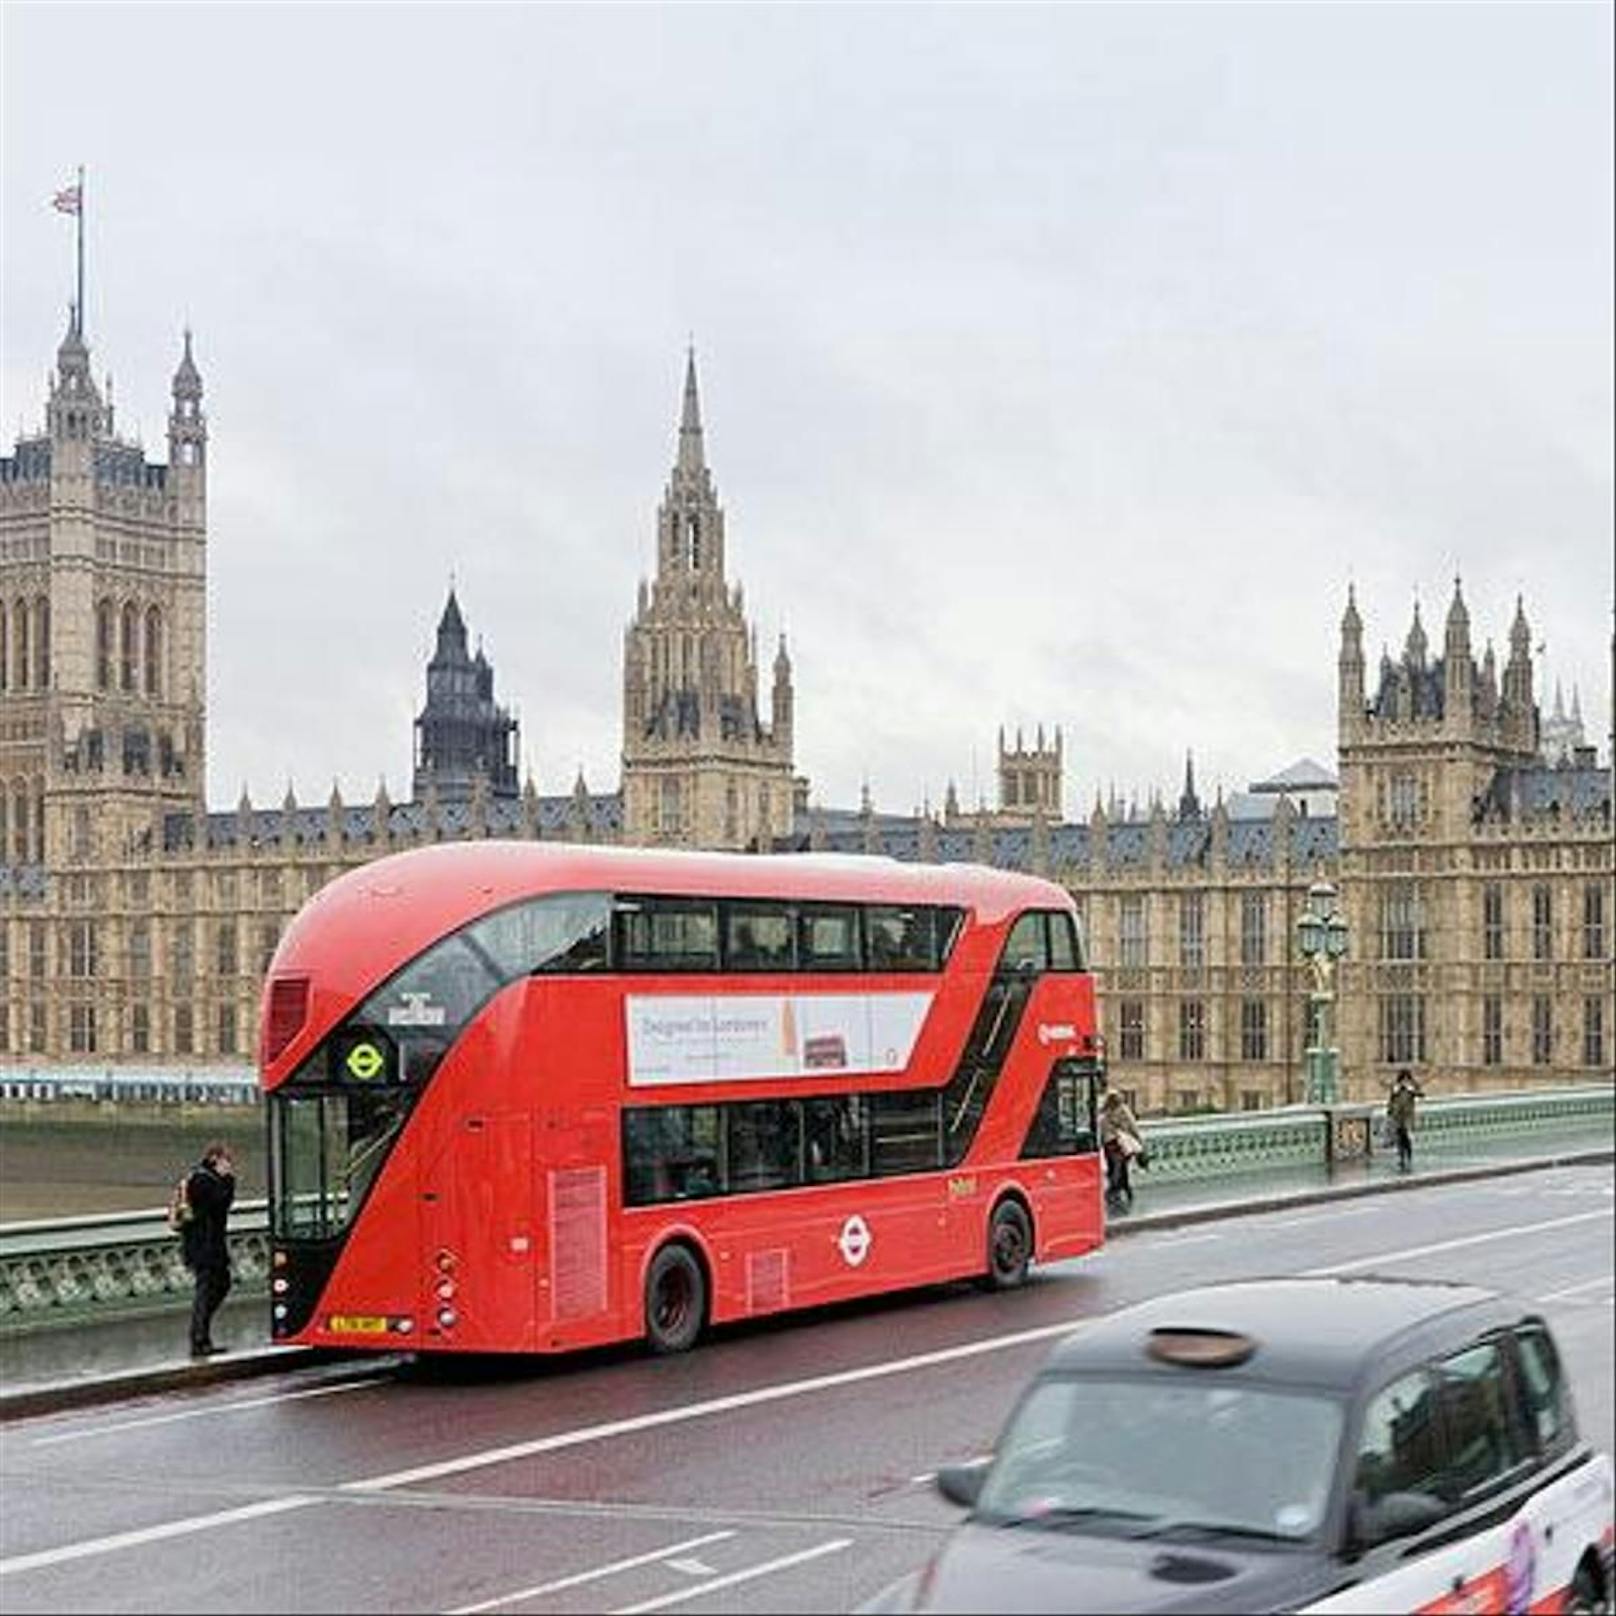 Das Heatherwick Studio steckt auch hinter den modernen roten Bussen in London.